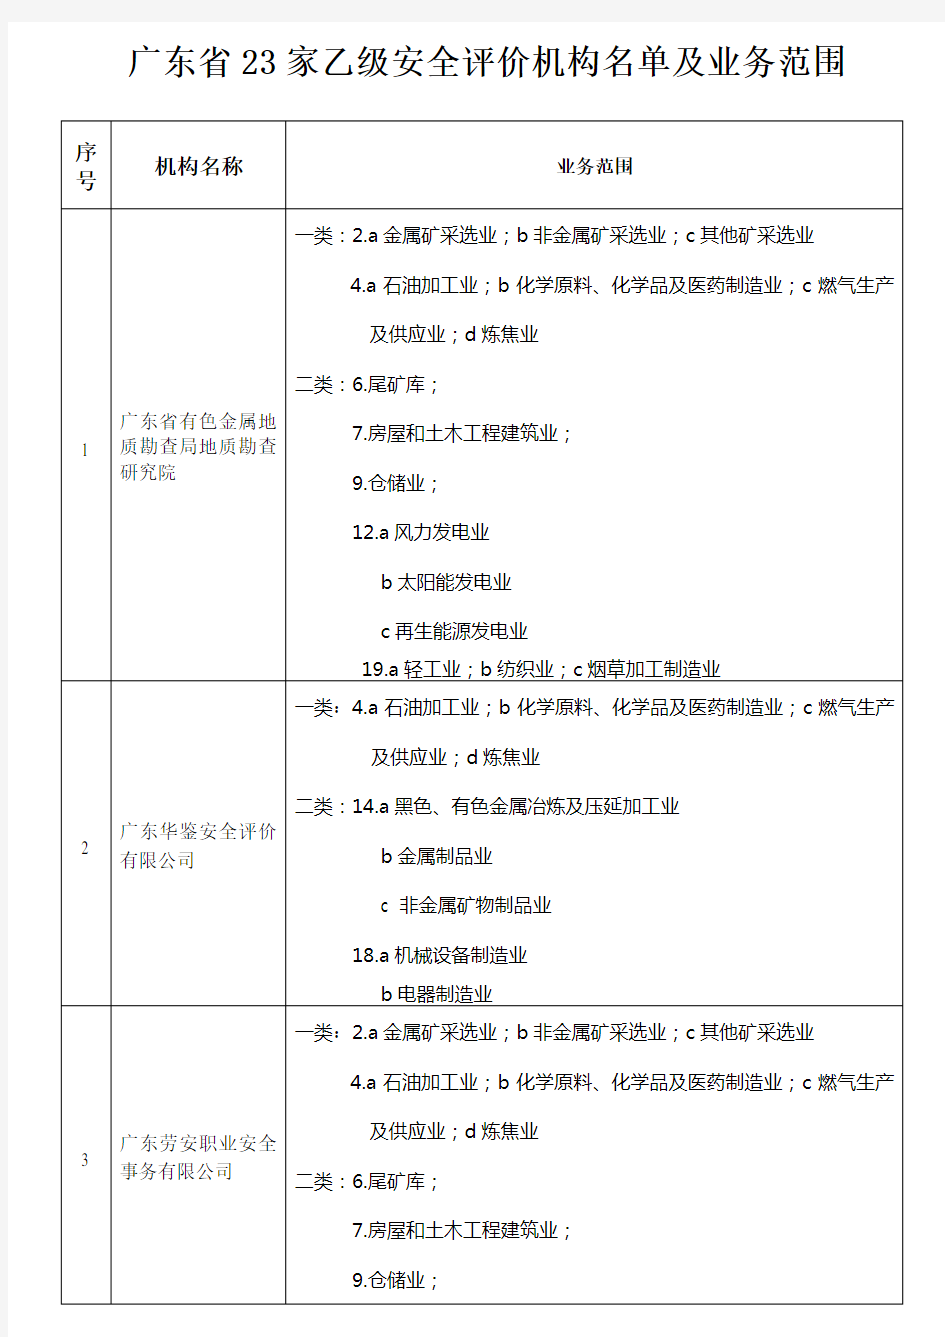 广东省23家乙级安全评价机构名单及业务范围